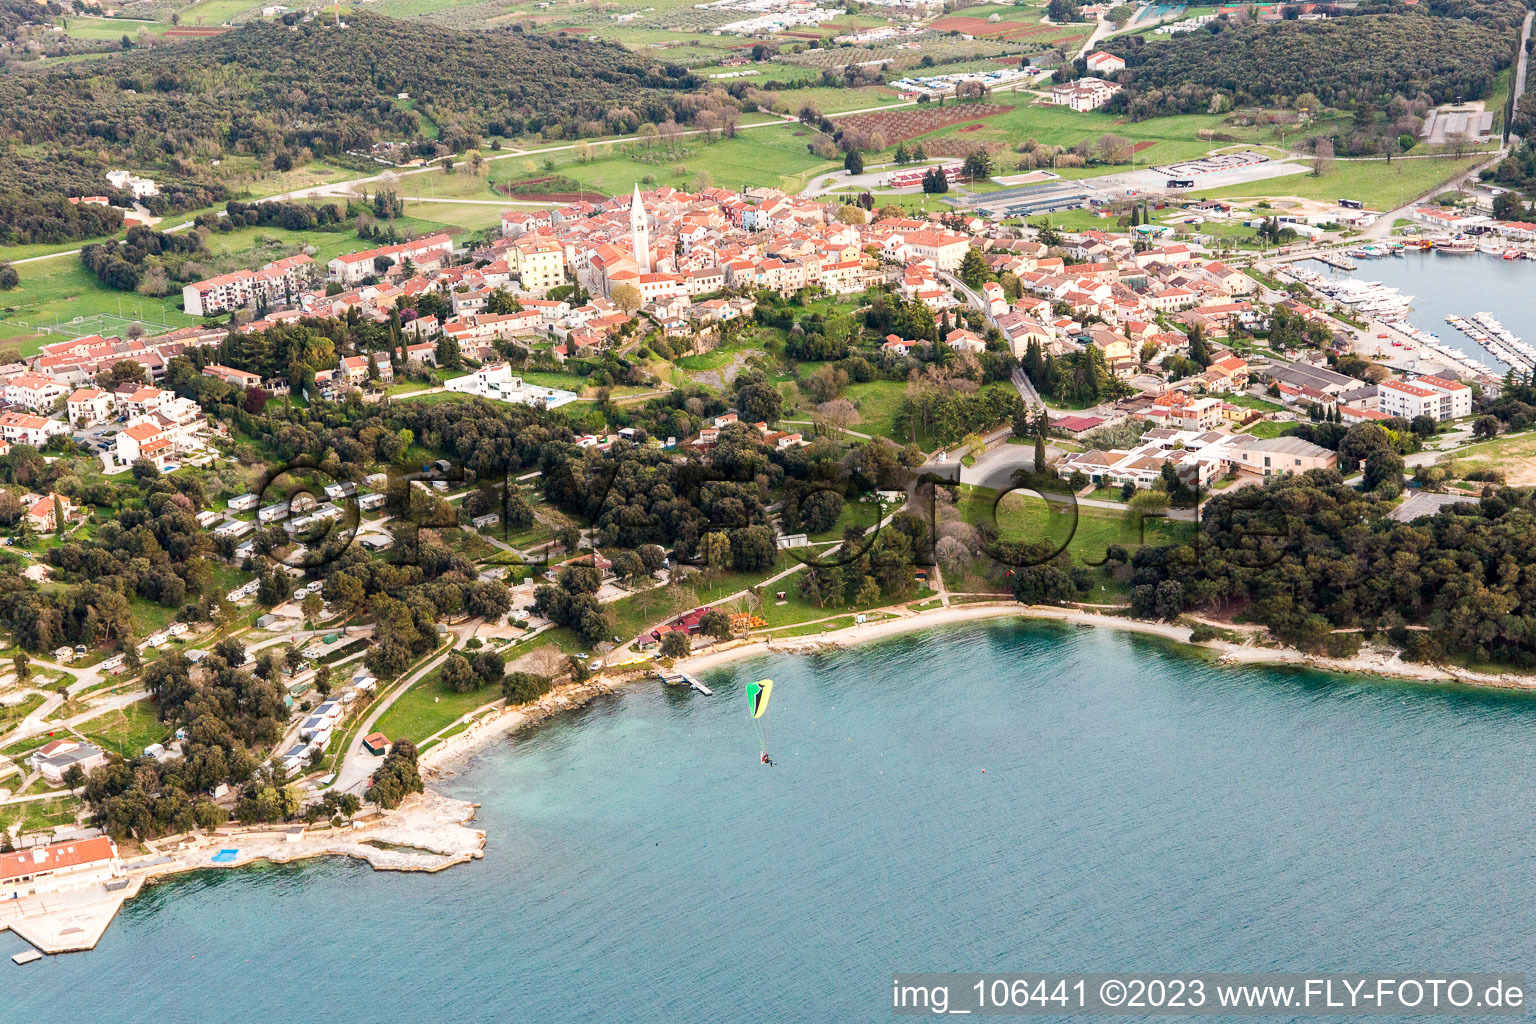 Stancija Valkanela dans le département Istrie, Croatie vu d'un drone